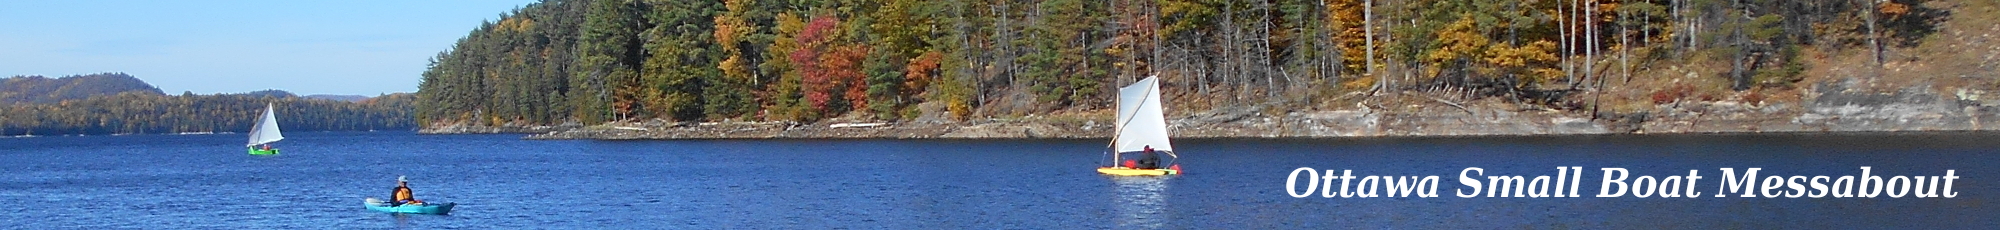 Ottawa Small Boat Messabout